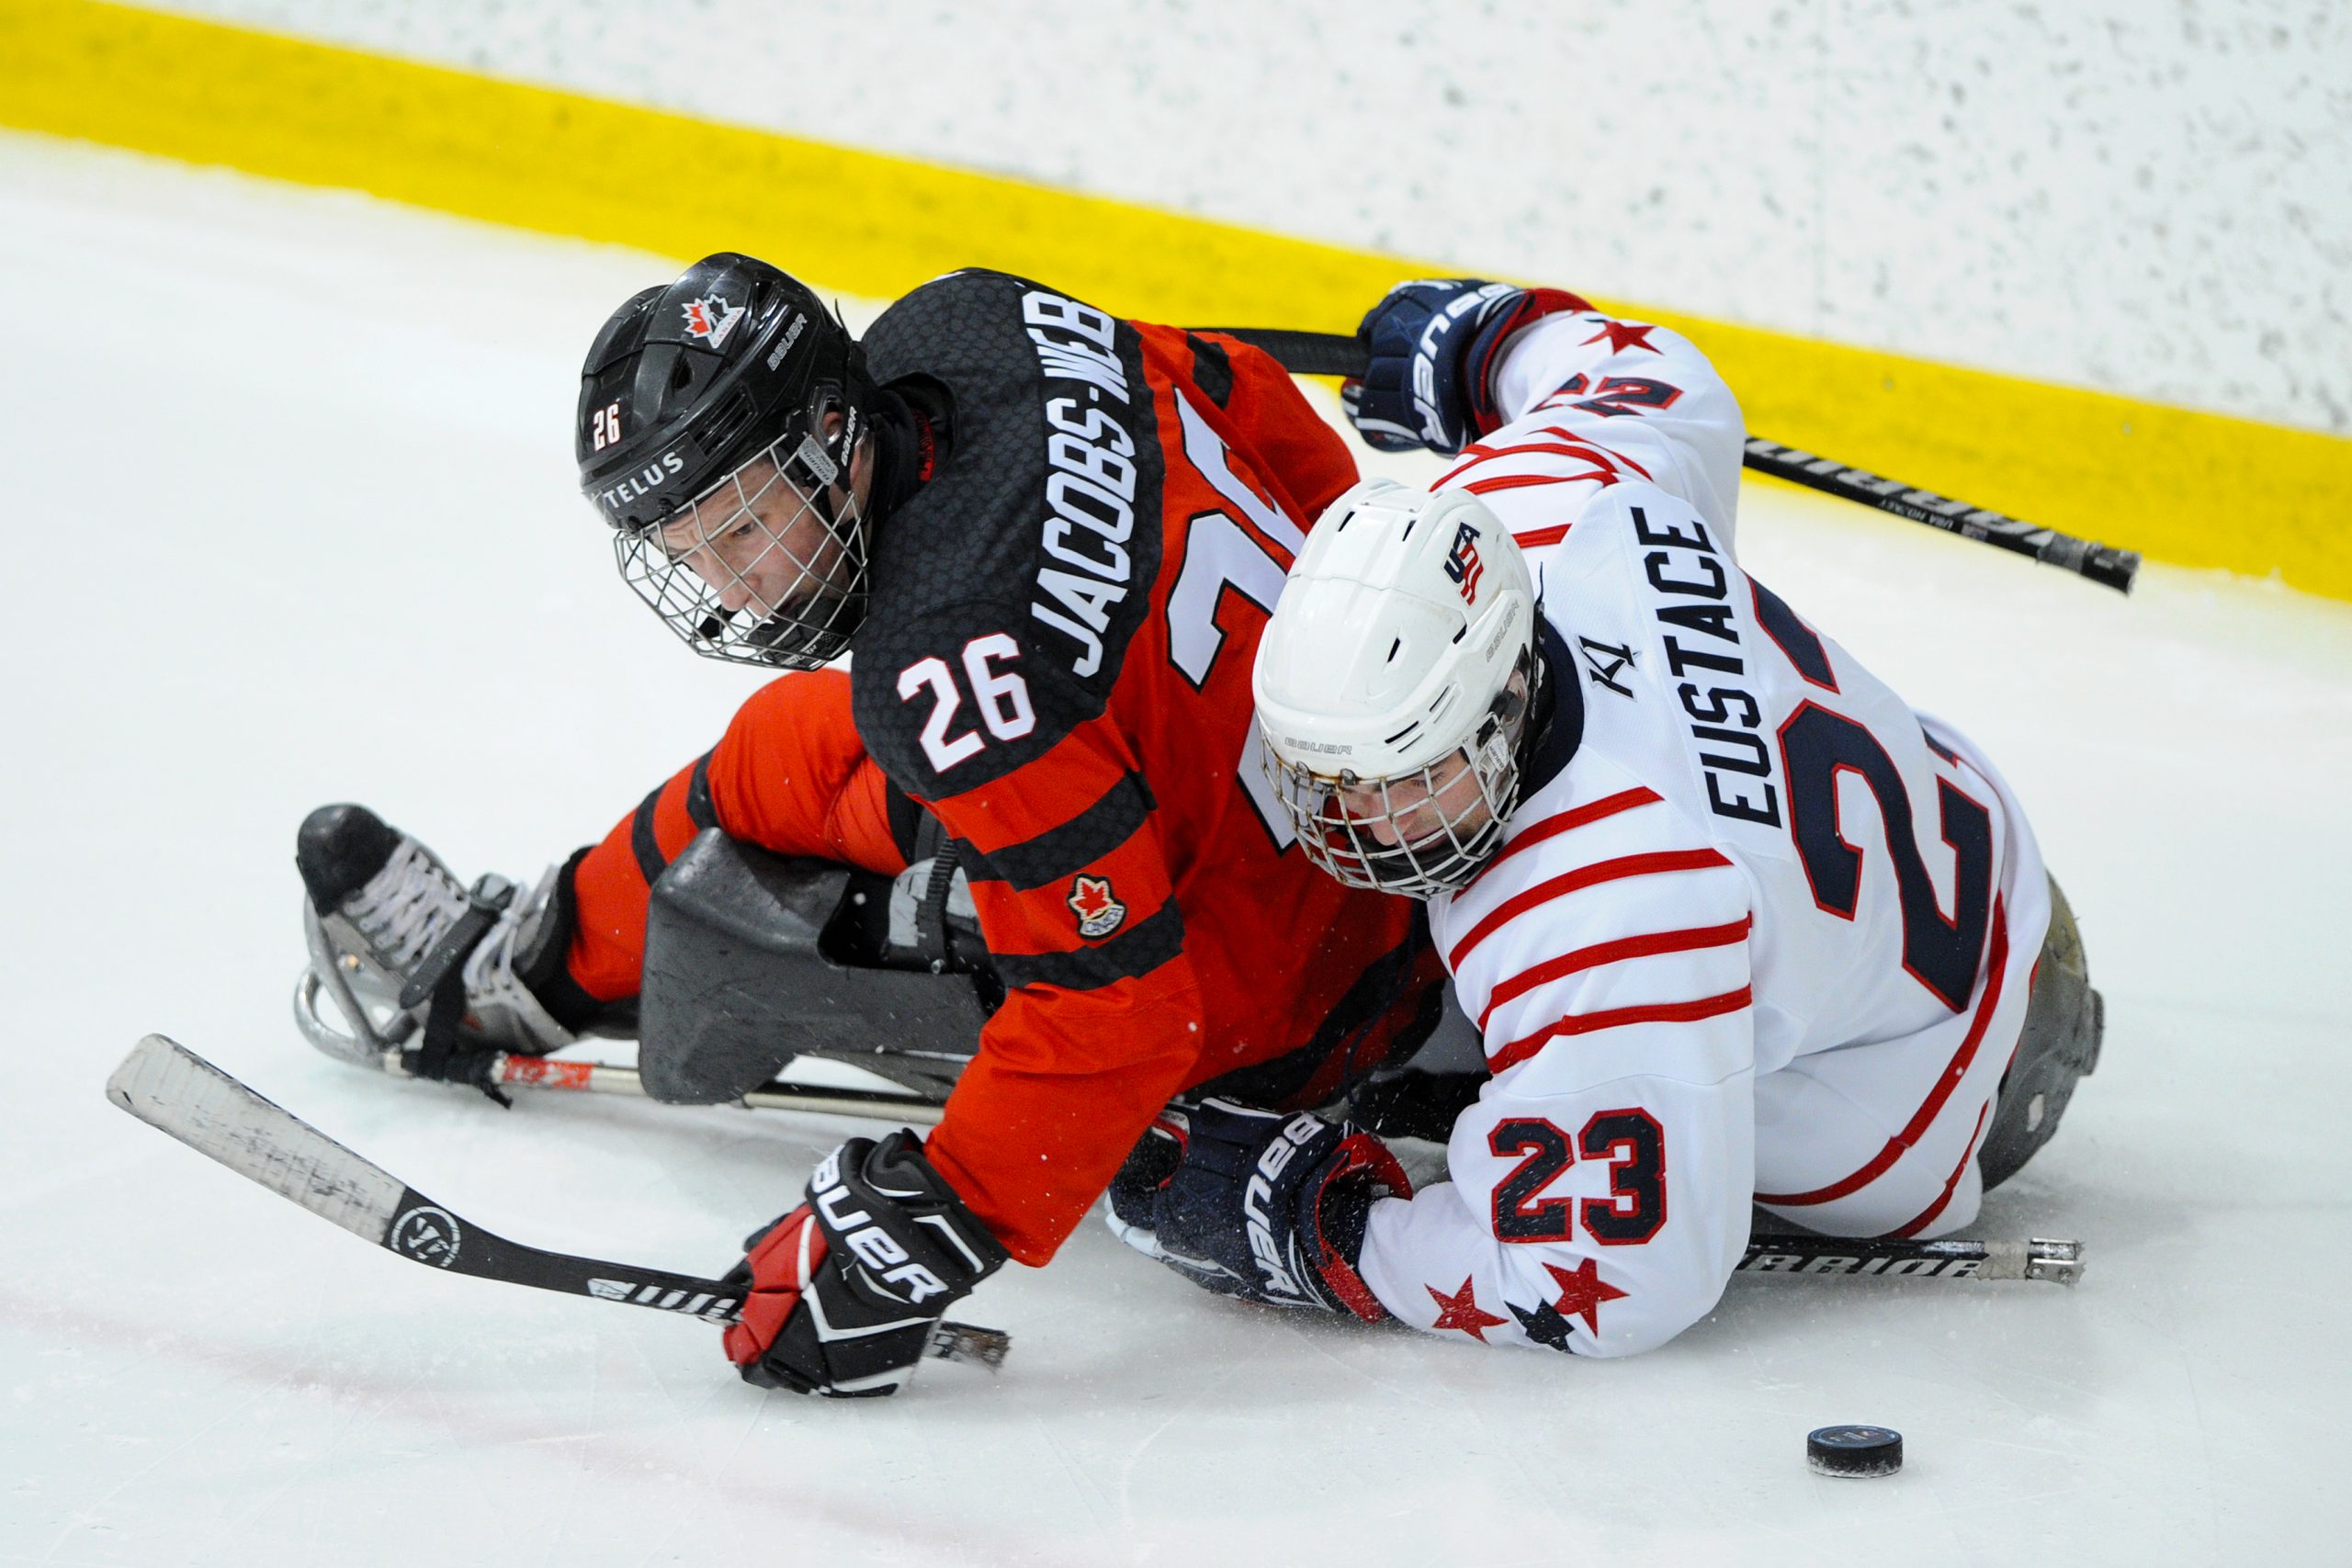 Description de l'image : Un joueur de parahockey de l'équipe canadienne se fait plaquer par un joueur de parahockey de l'équipe américaine. Ils cherchent tous les deux la rondelle, qui est derrière eux.